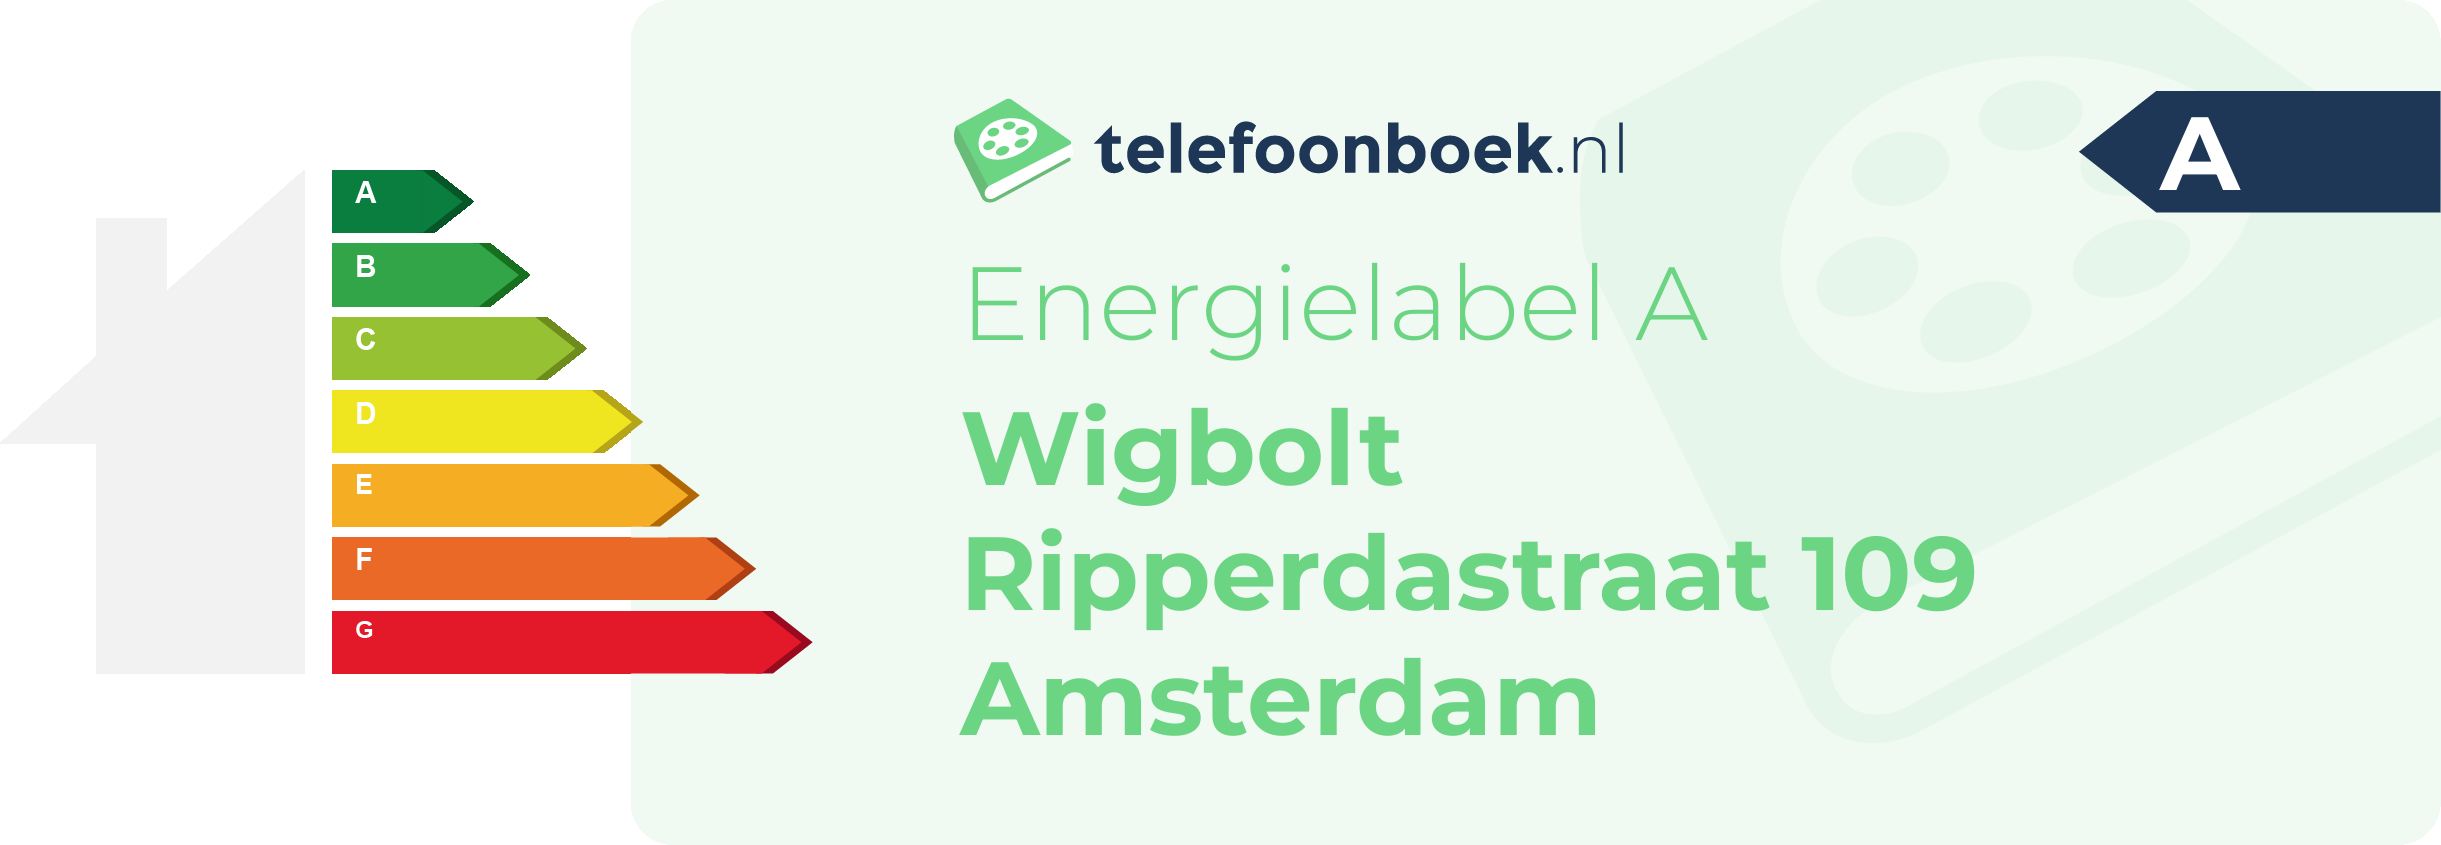 Energielabel Wigbolt Ripperdastraat 109 Amsterdam